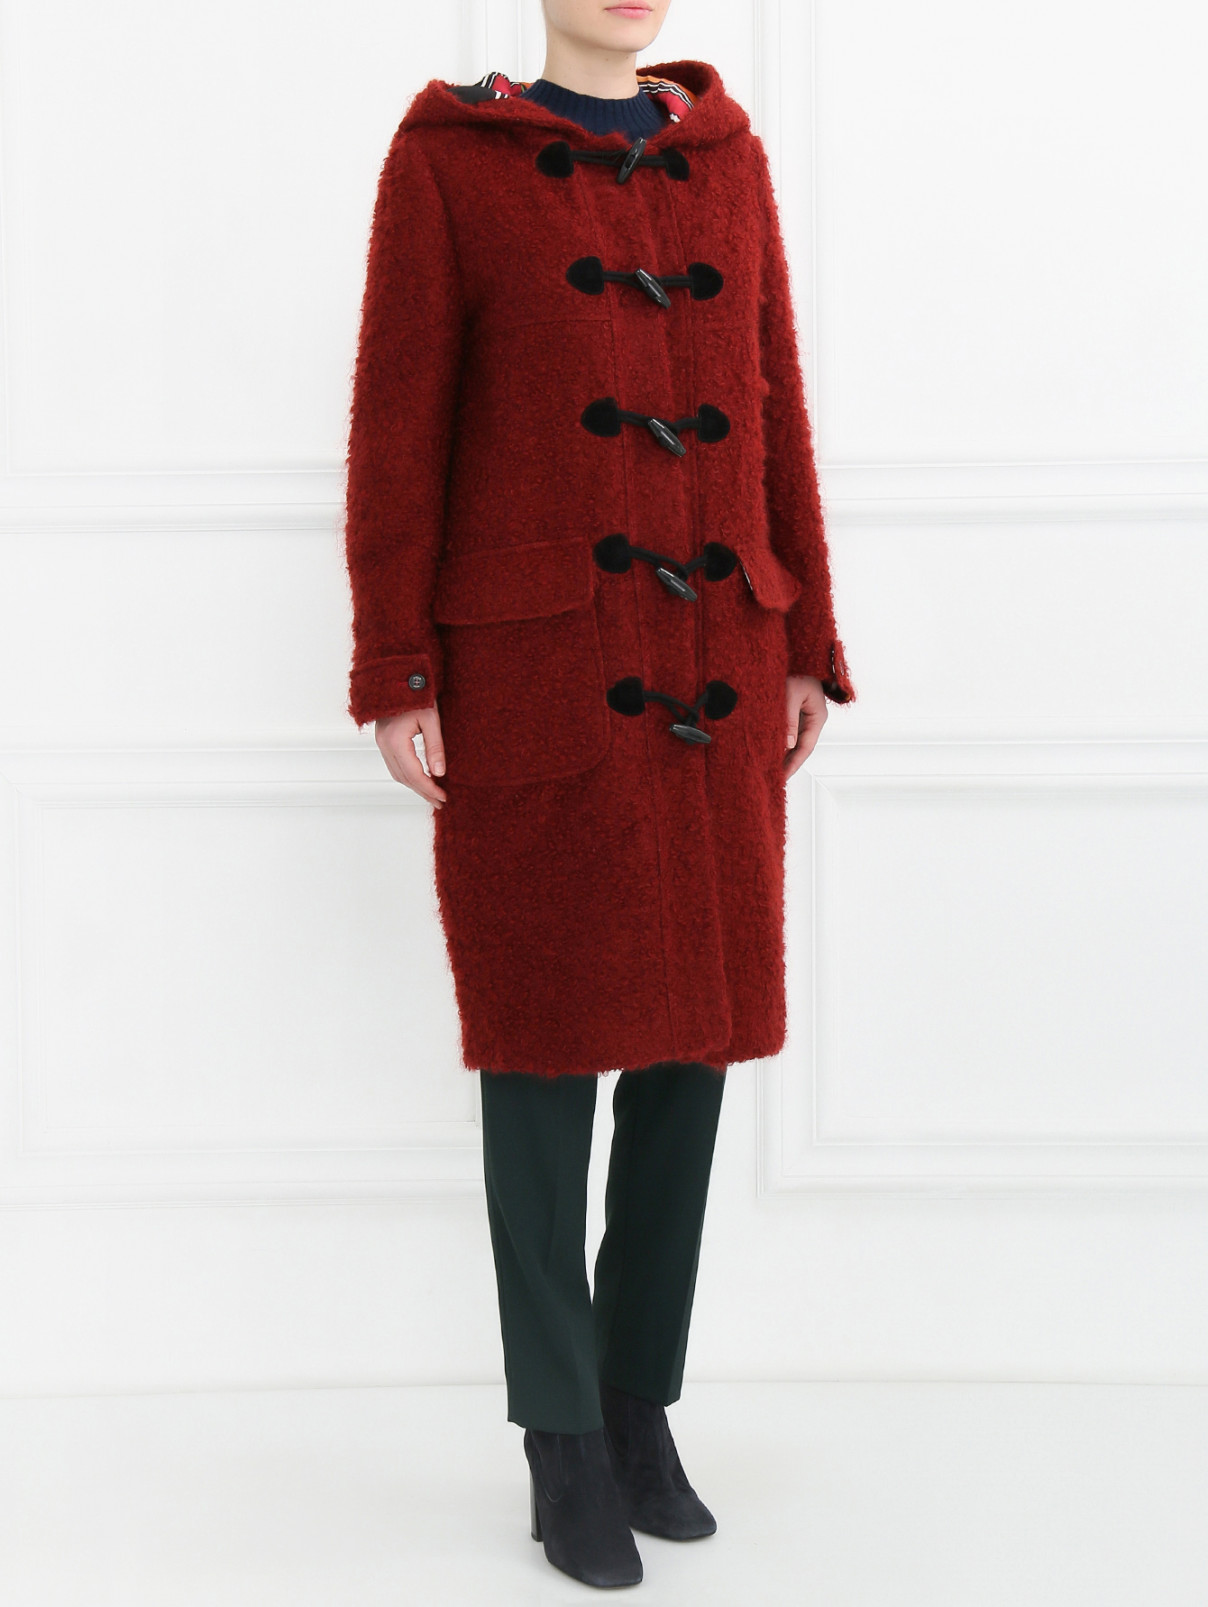 Пальто из мохера и шерсти с накладными карманами и контрастной отделкой Stella Jean  –  Модель Общий вид  – Цвет:  Красный